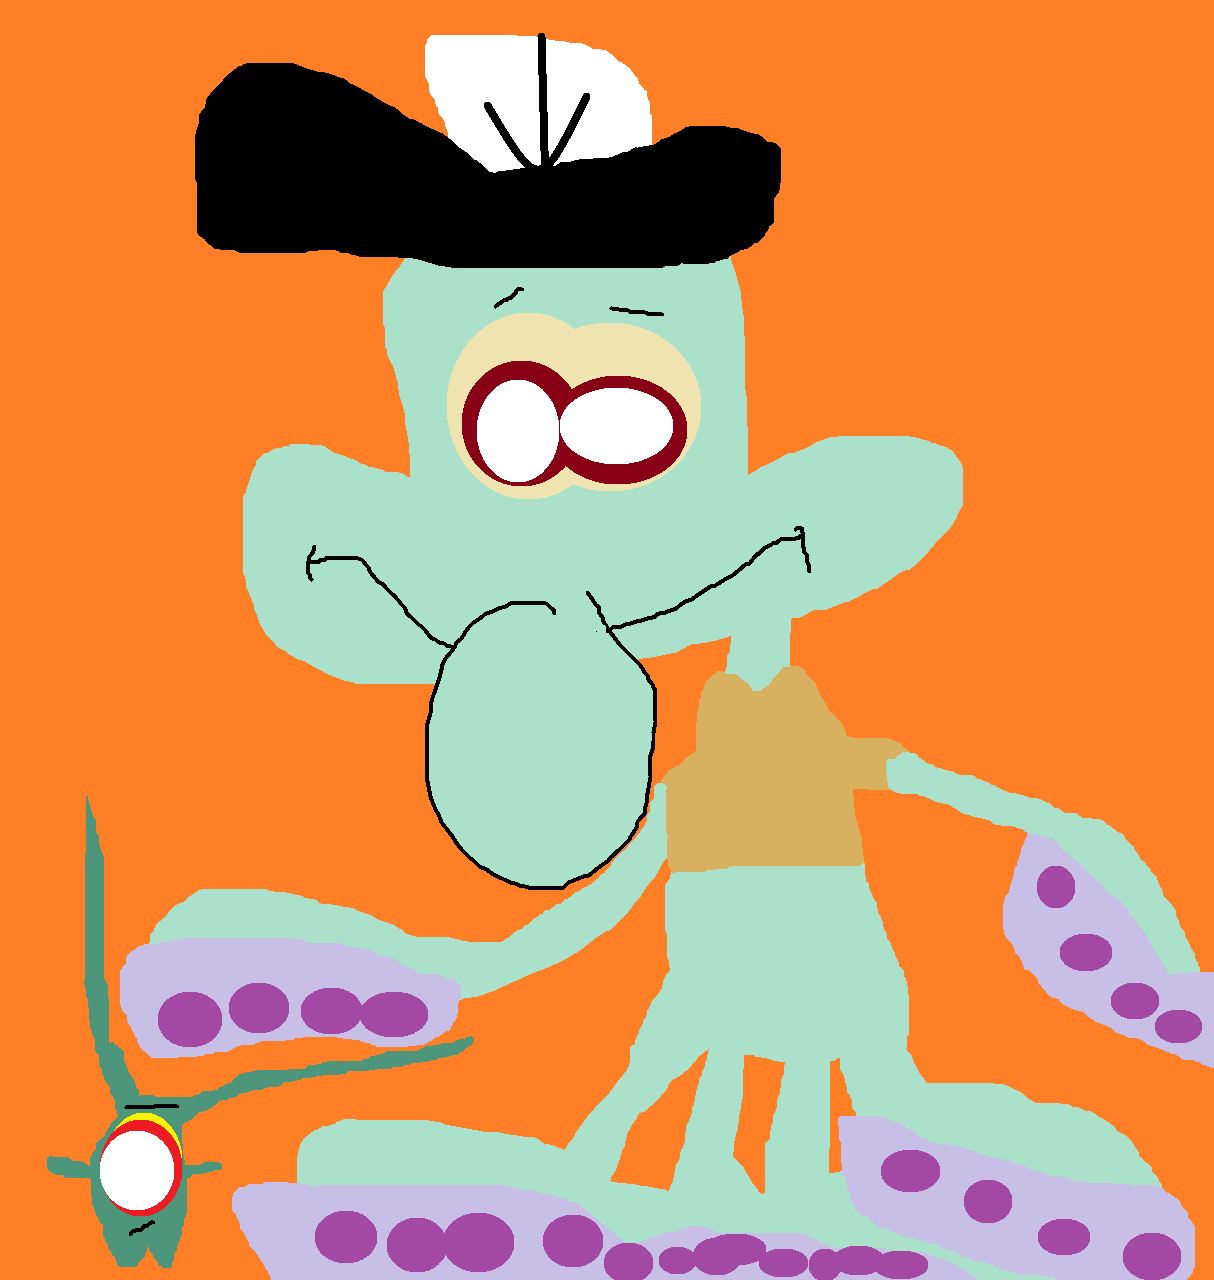 Tiny Squidward And Teeny Plankton by Falconlobo